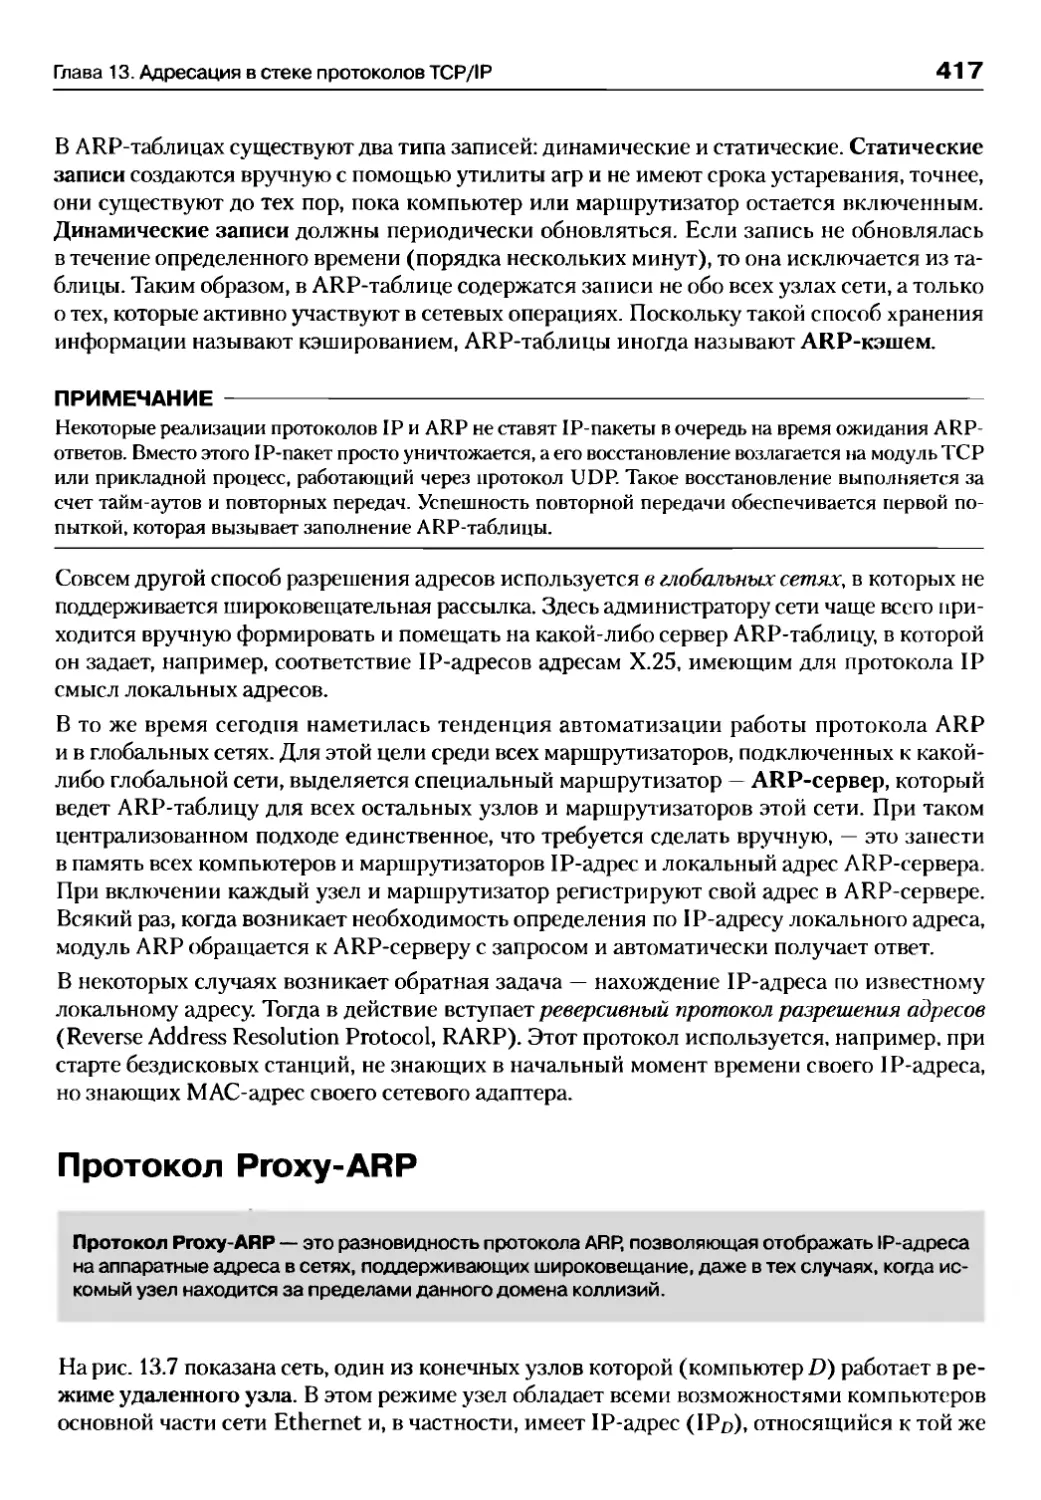 Протокол Proxy-ARP